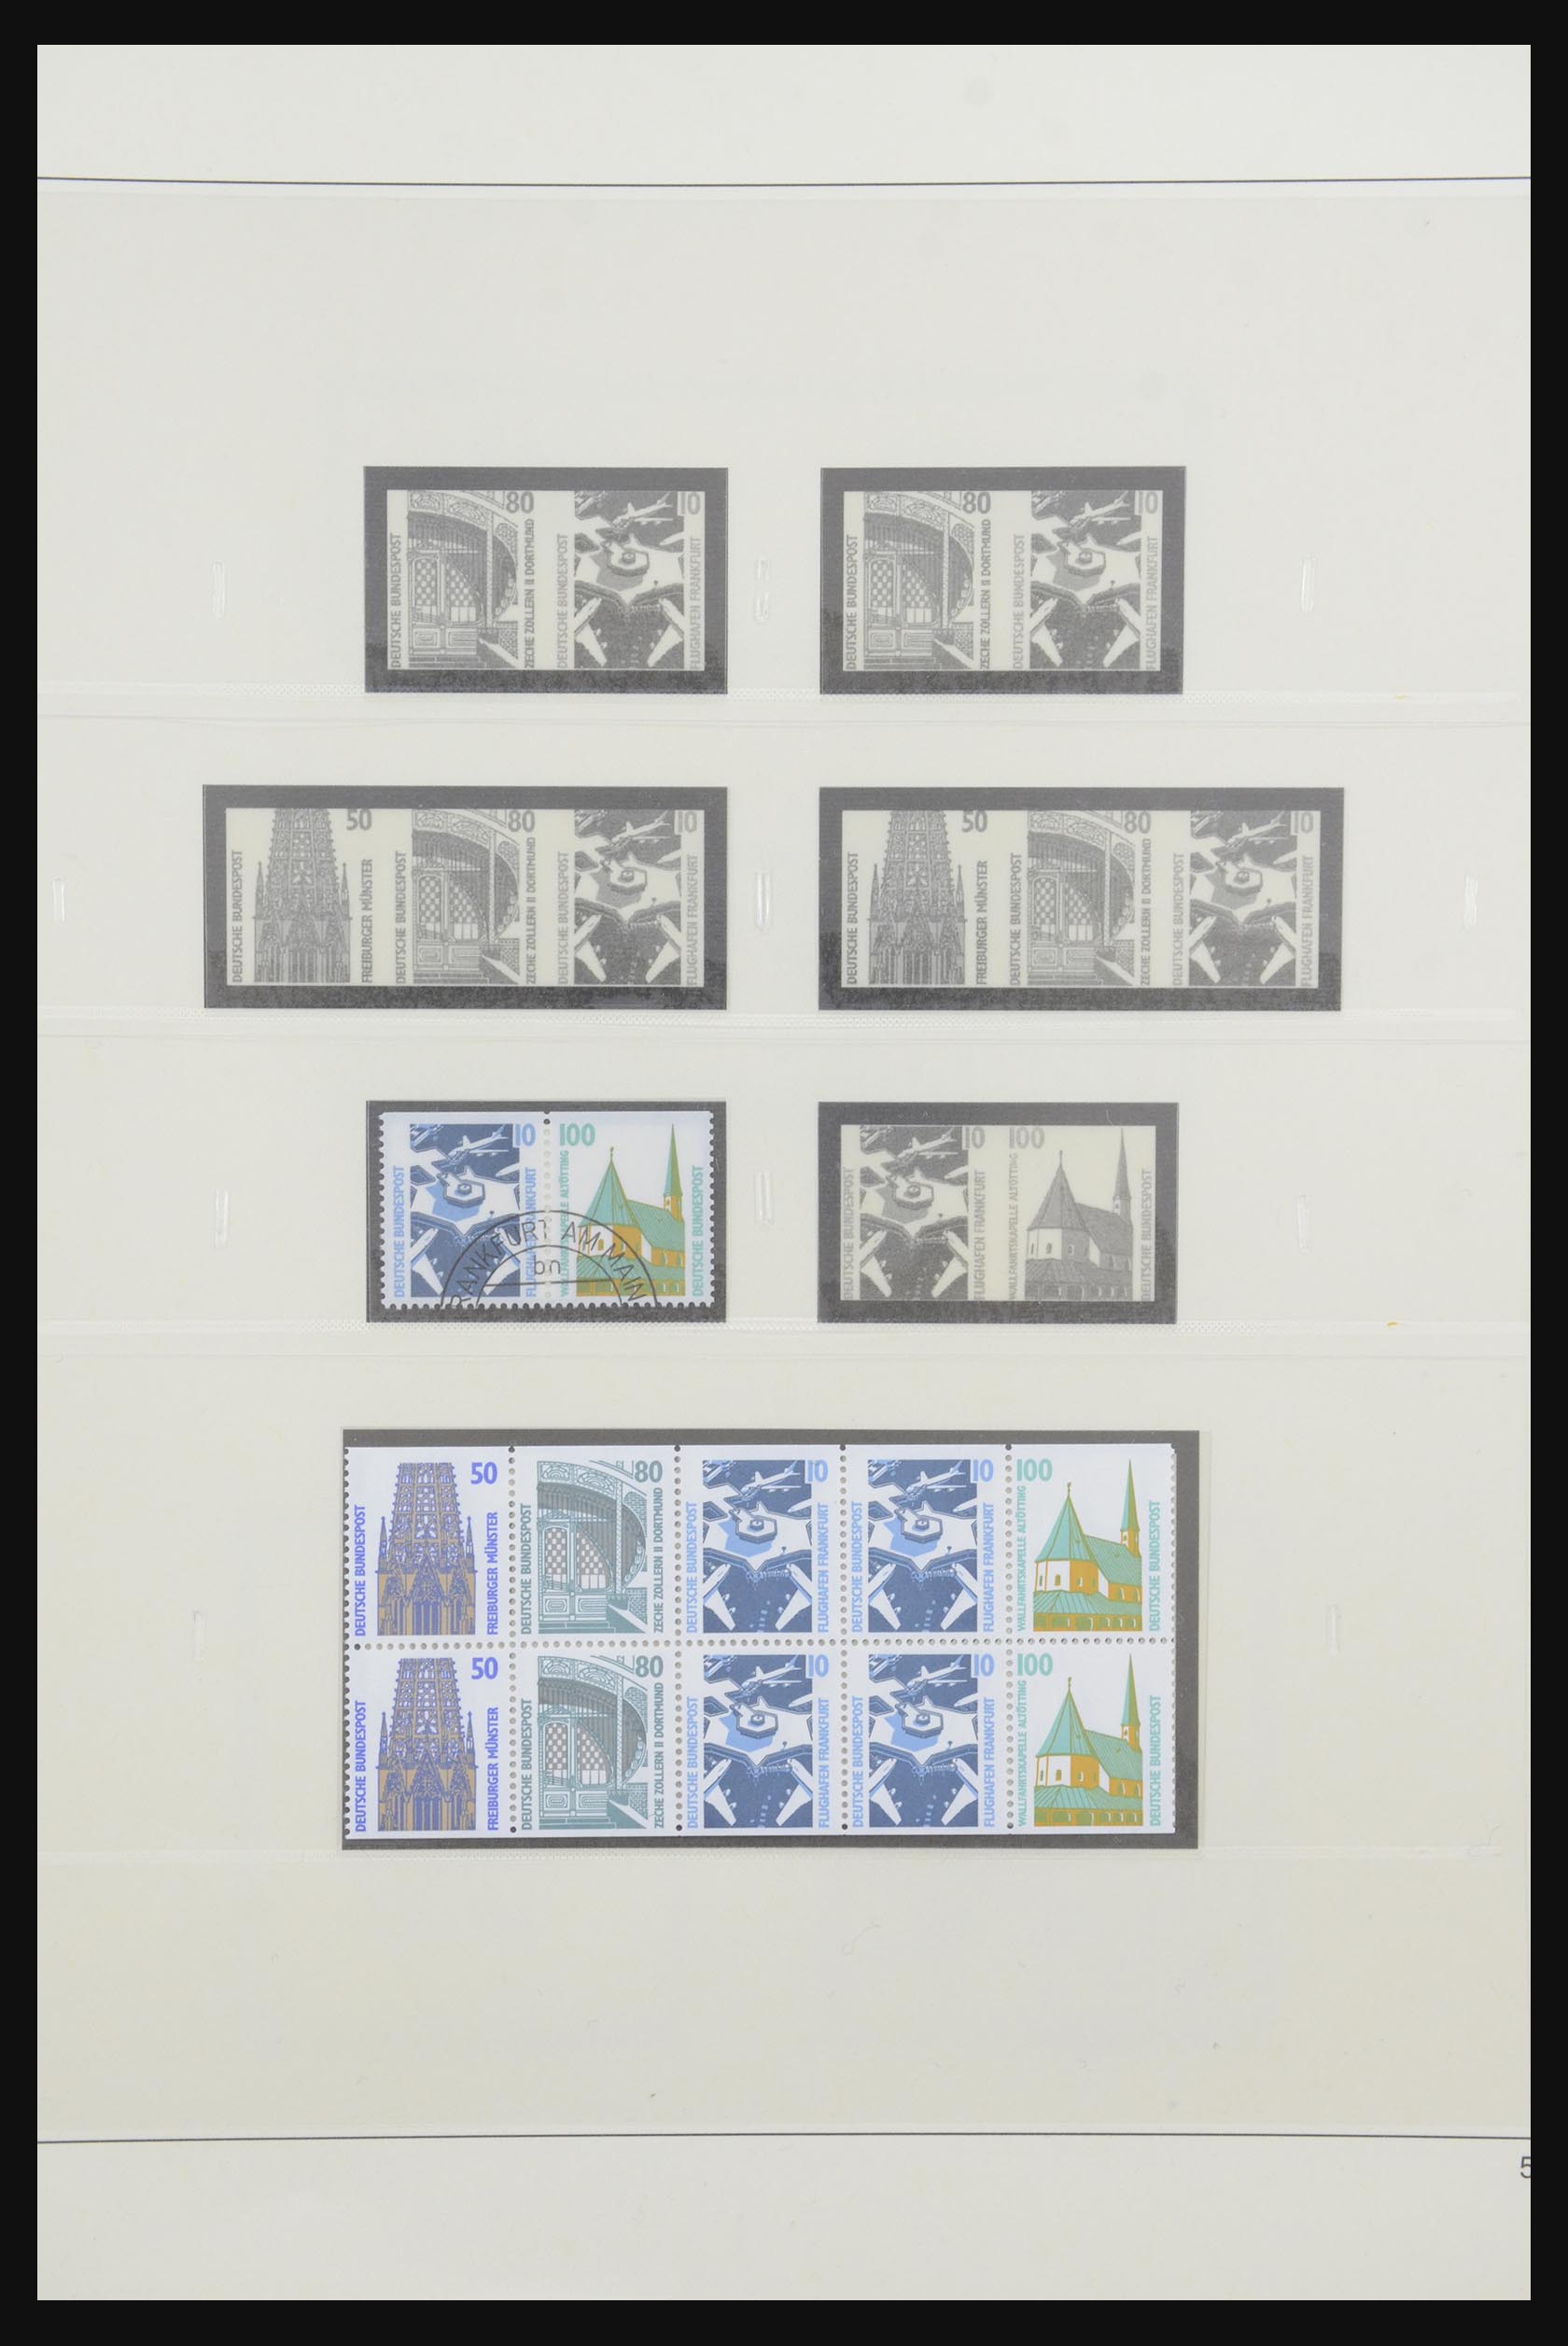 31842 080 - 31842 Bundespost combinaties 1951-2003.